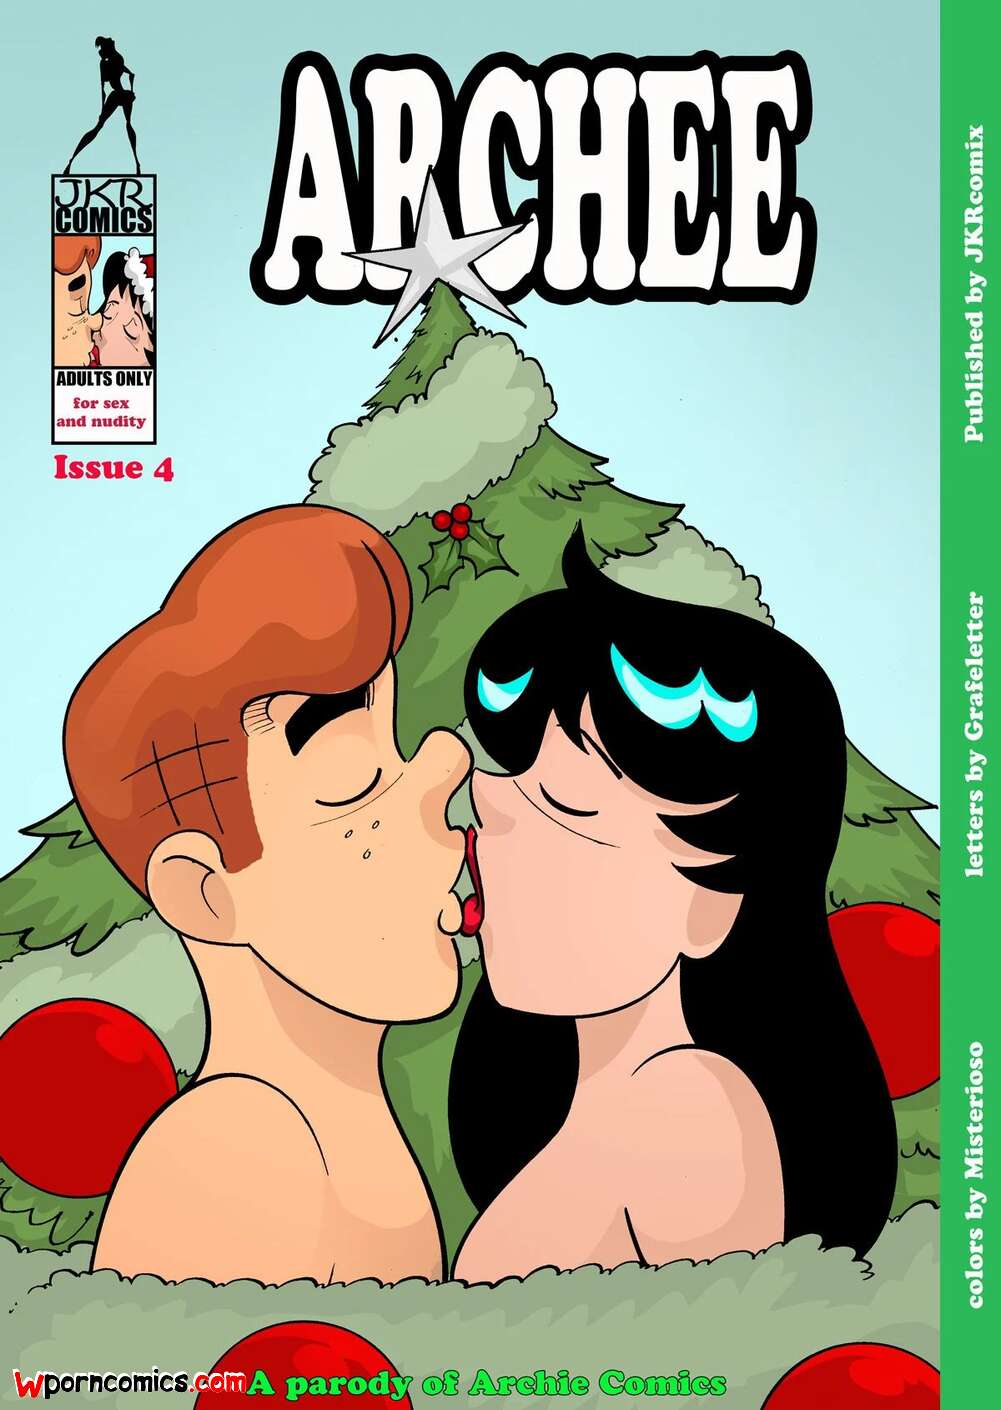 1001px x 1410px - âœ…ï¸ Porn comic Archee. Chapter 4. Archies. JKRComix. Sex comic family was  celebrating | Porn comics in English for adults only | sexkomix2.com